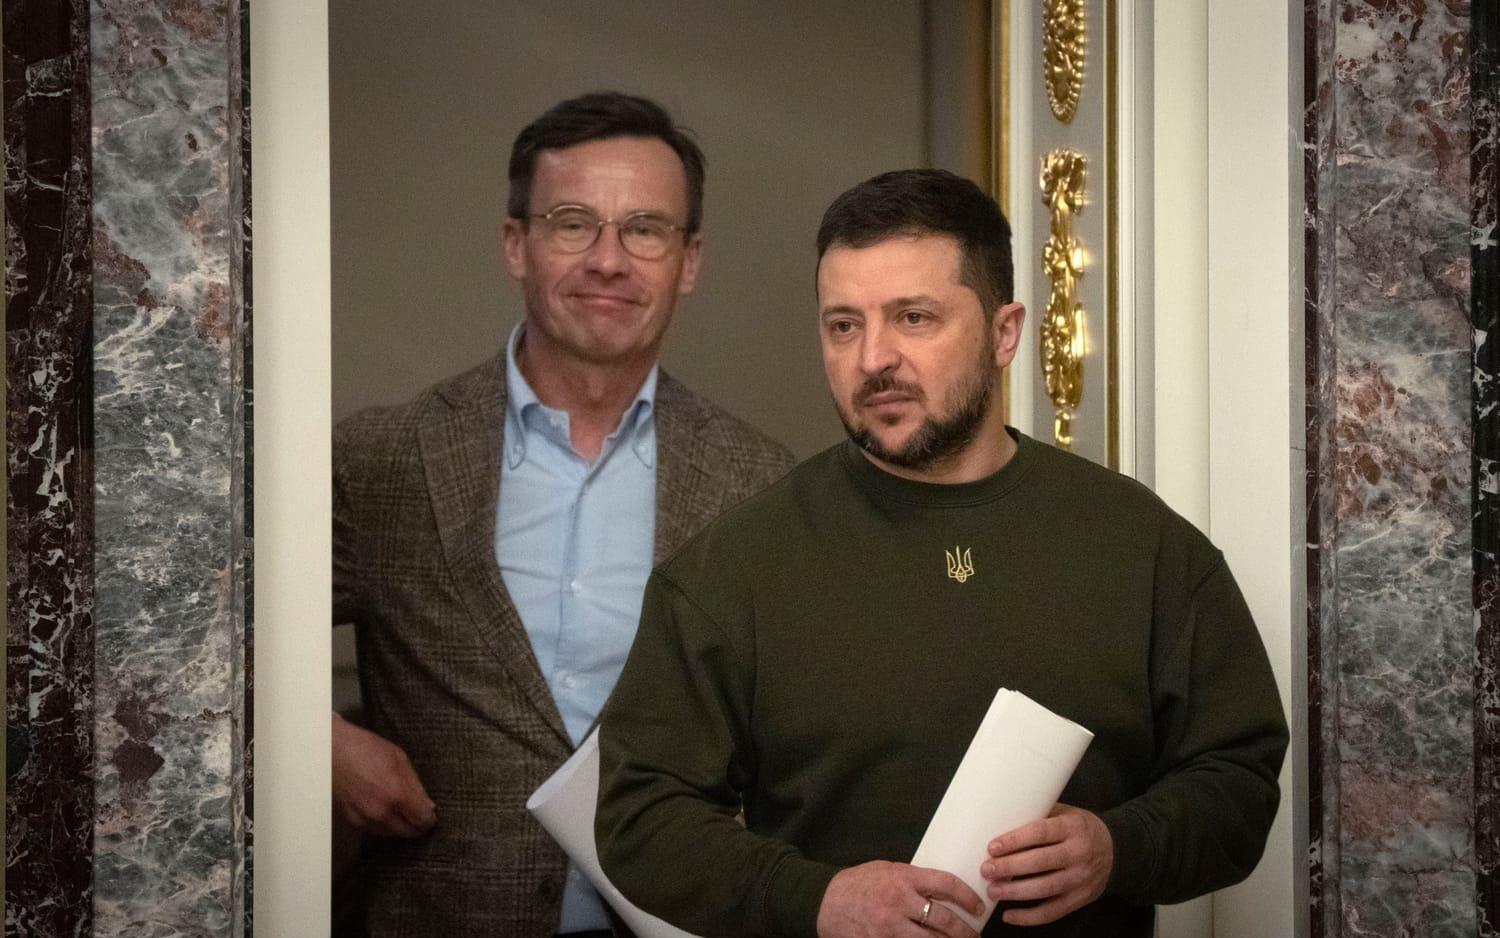 Sveriges statsminister Ulf Kristersson och Ukrainas president Volodymyr Zelenskyj anländer till den gemensamma pressträffen i Kiev.